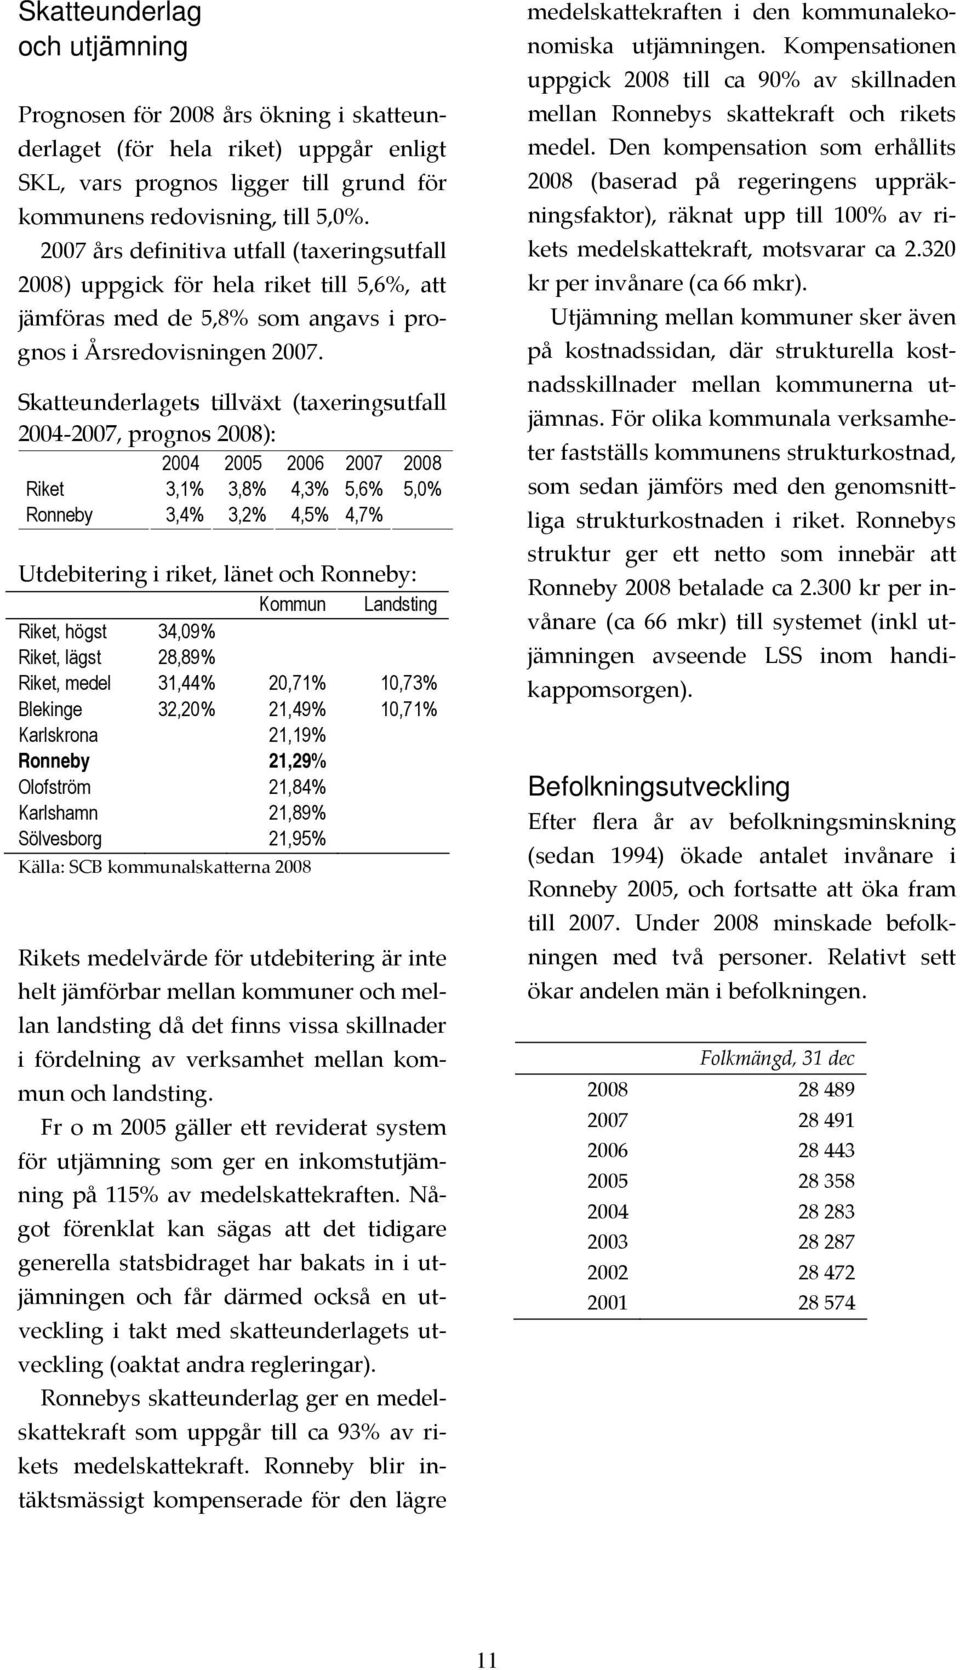 Skatteunderlagets tillväxt (taxeringsutfall 2004-2007, prognos ): 2004 2005 2006 2007 Riket Ronneby 3,1% 3,4% 3,8% 3,2% 4,3% 4,5% 5,6% 4,7% 5,0% Utdebitering i riket, länet och Ronneby: Kommun